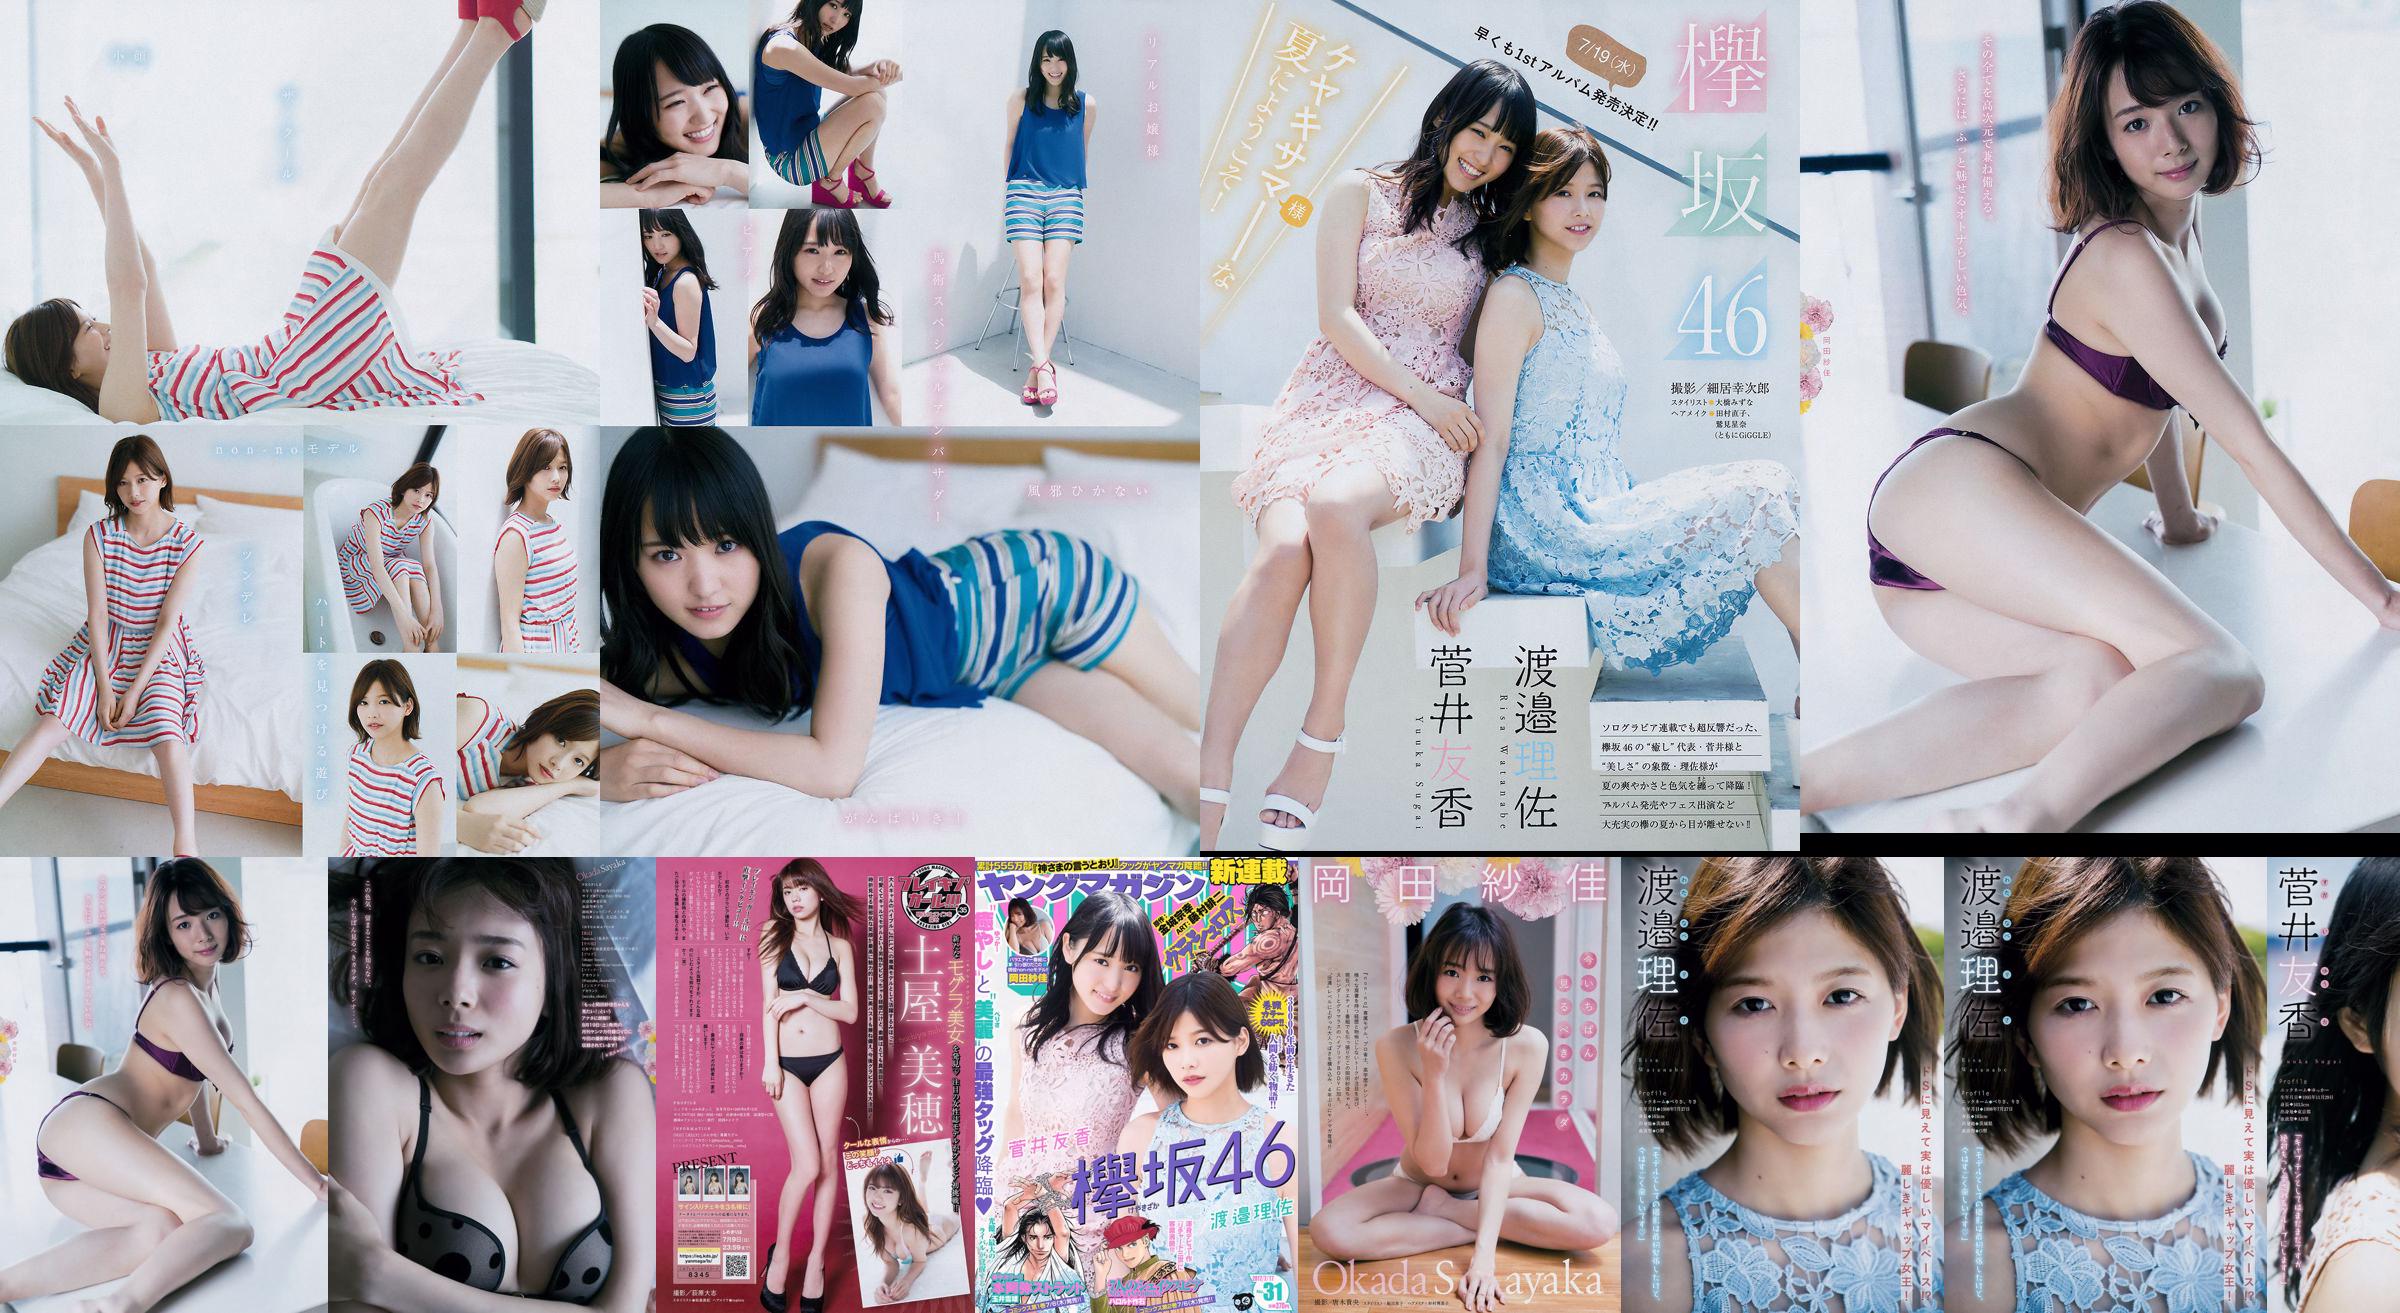 [Young Magazine] Watanabe Risa, Sugai Yuka, Okada Saika 2017 No.31 Photo Magazine No.9f4523 Page 1